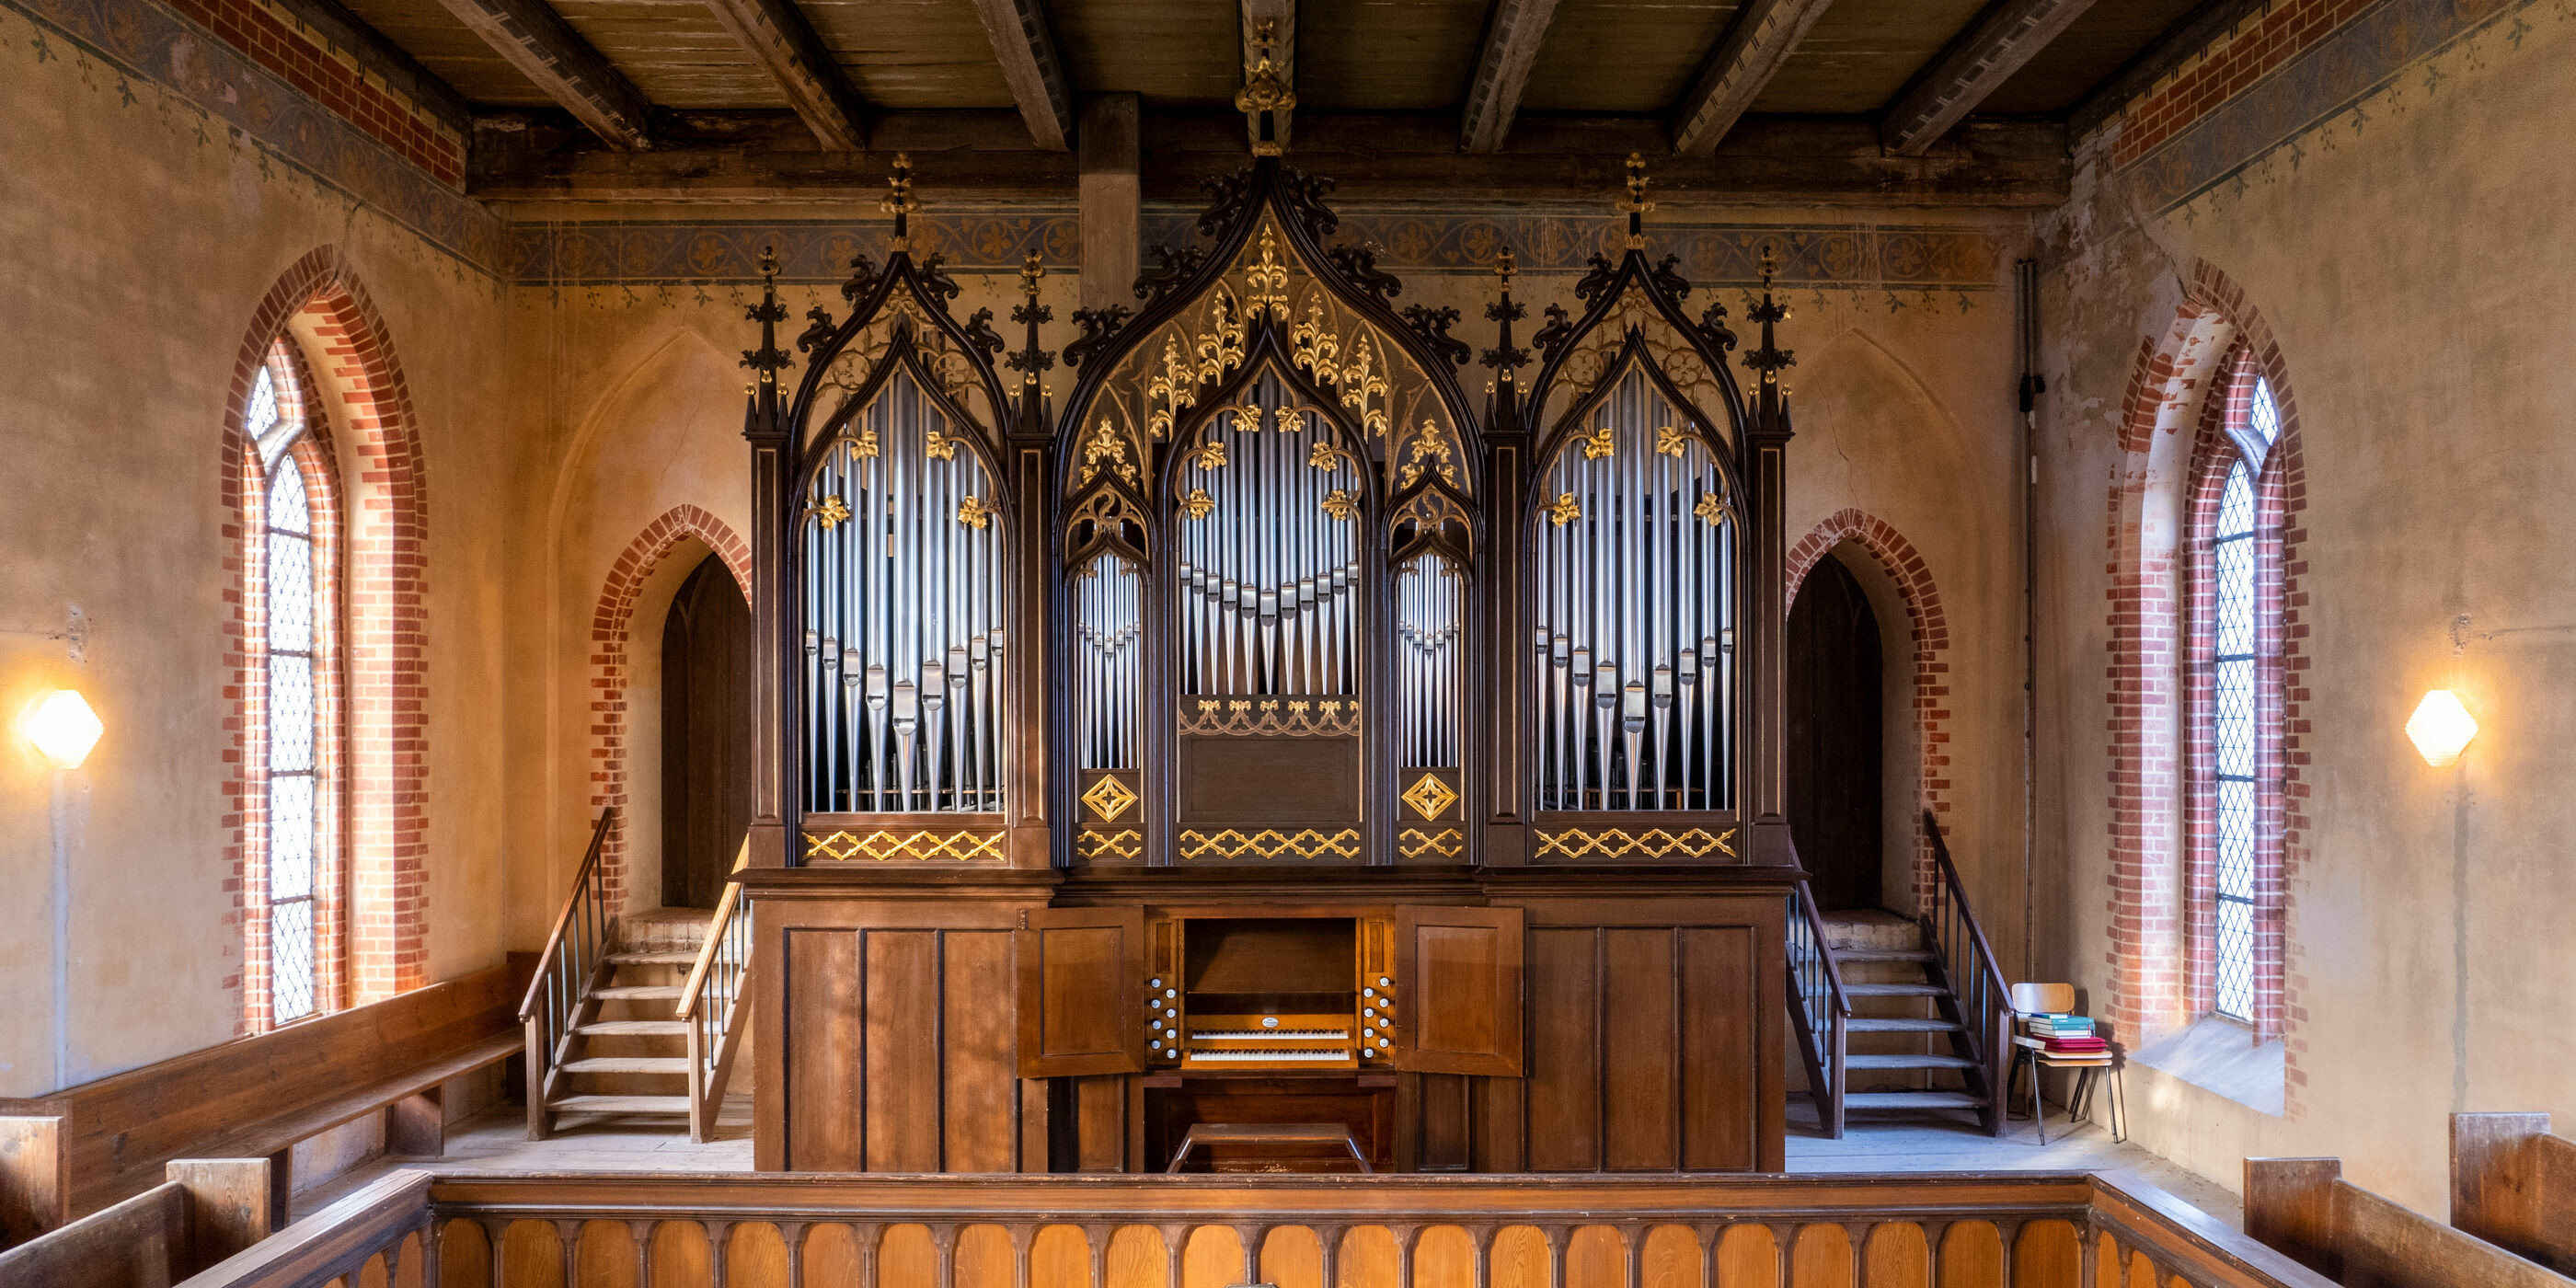 Orgel von Barnim Grüneberg in der Dorfkirche in Beggerow